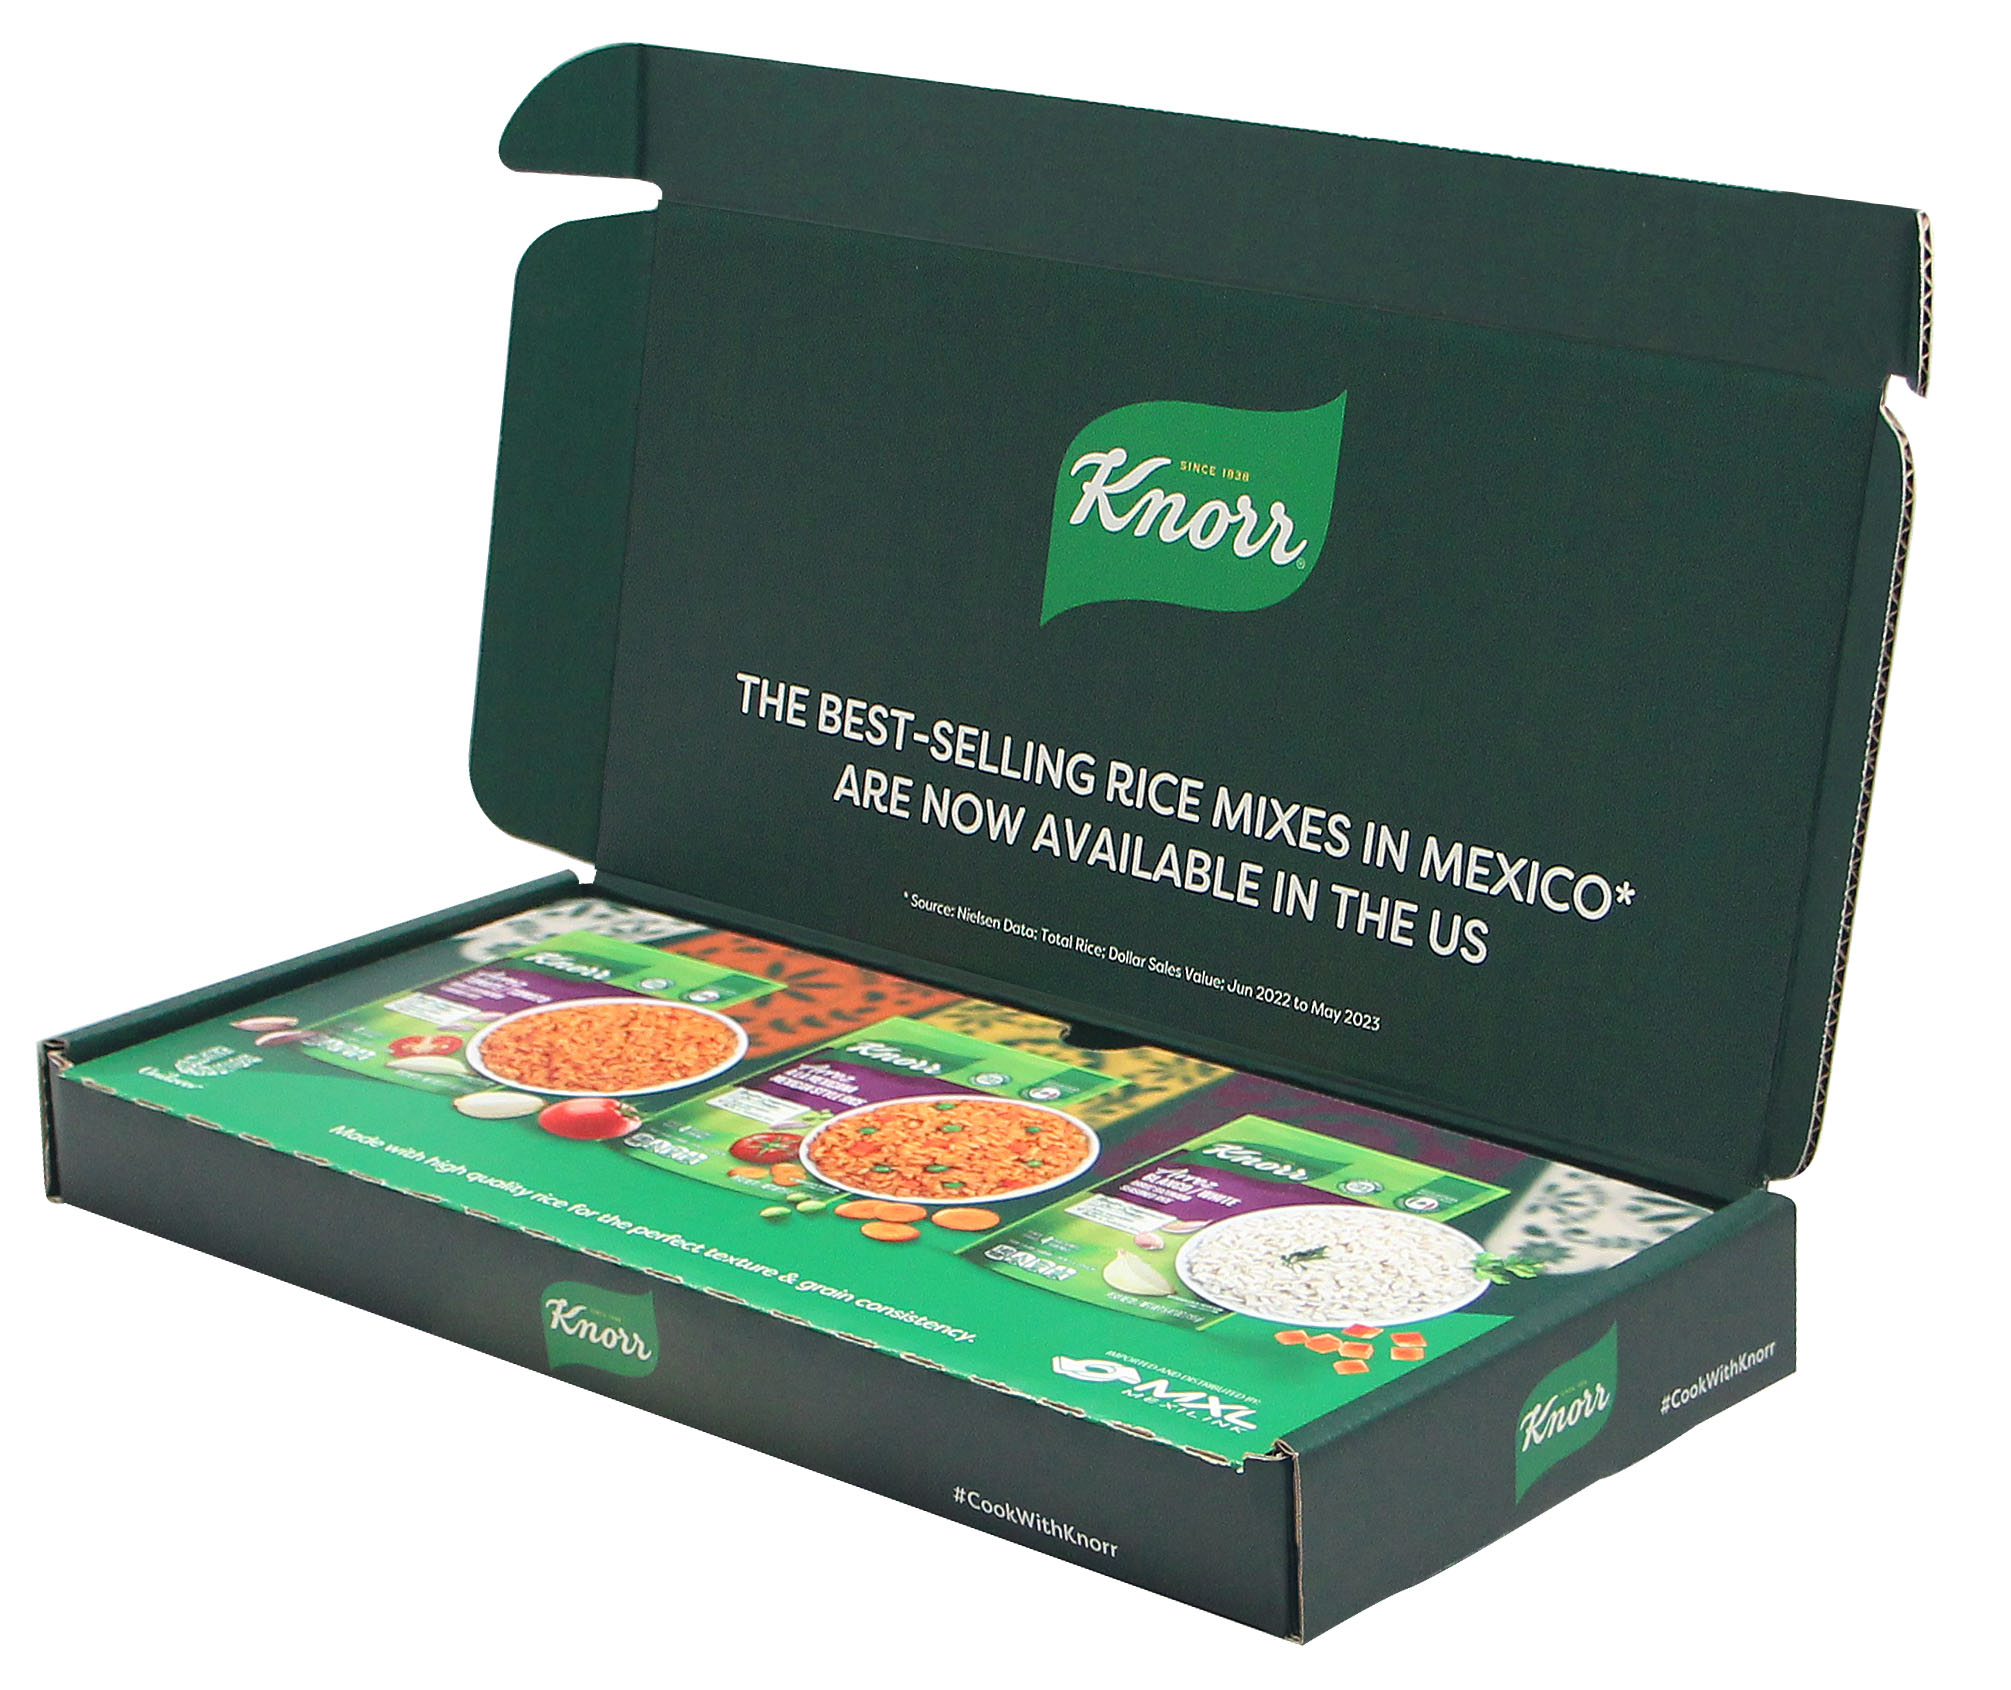 Knorr open flavor kit digitally printed packaging